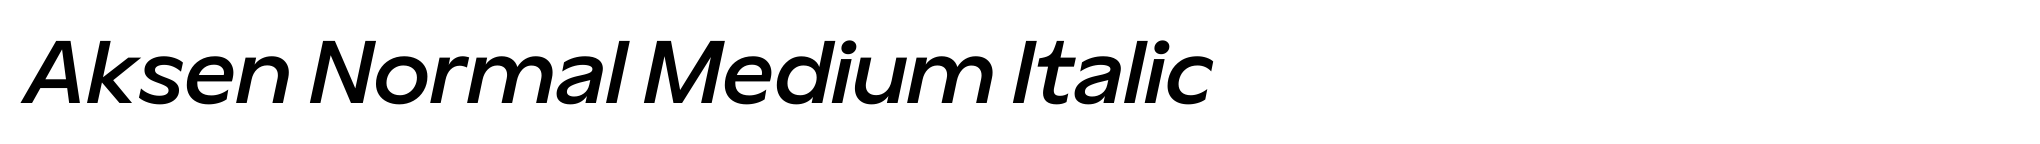 Aksen Normal Medium Italic image